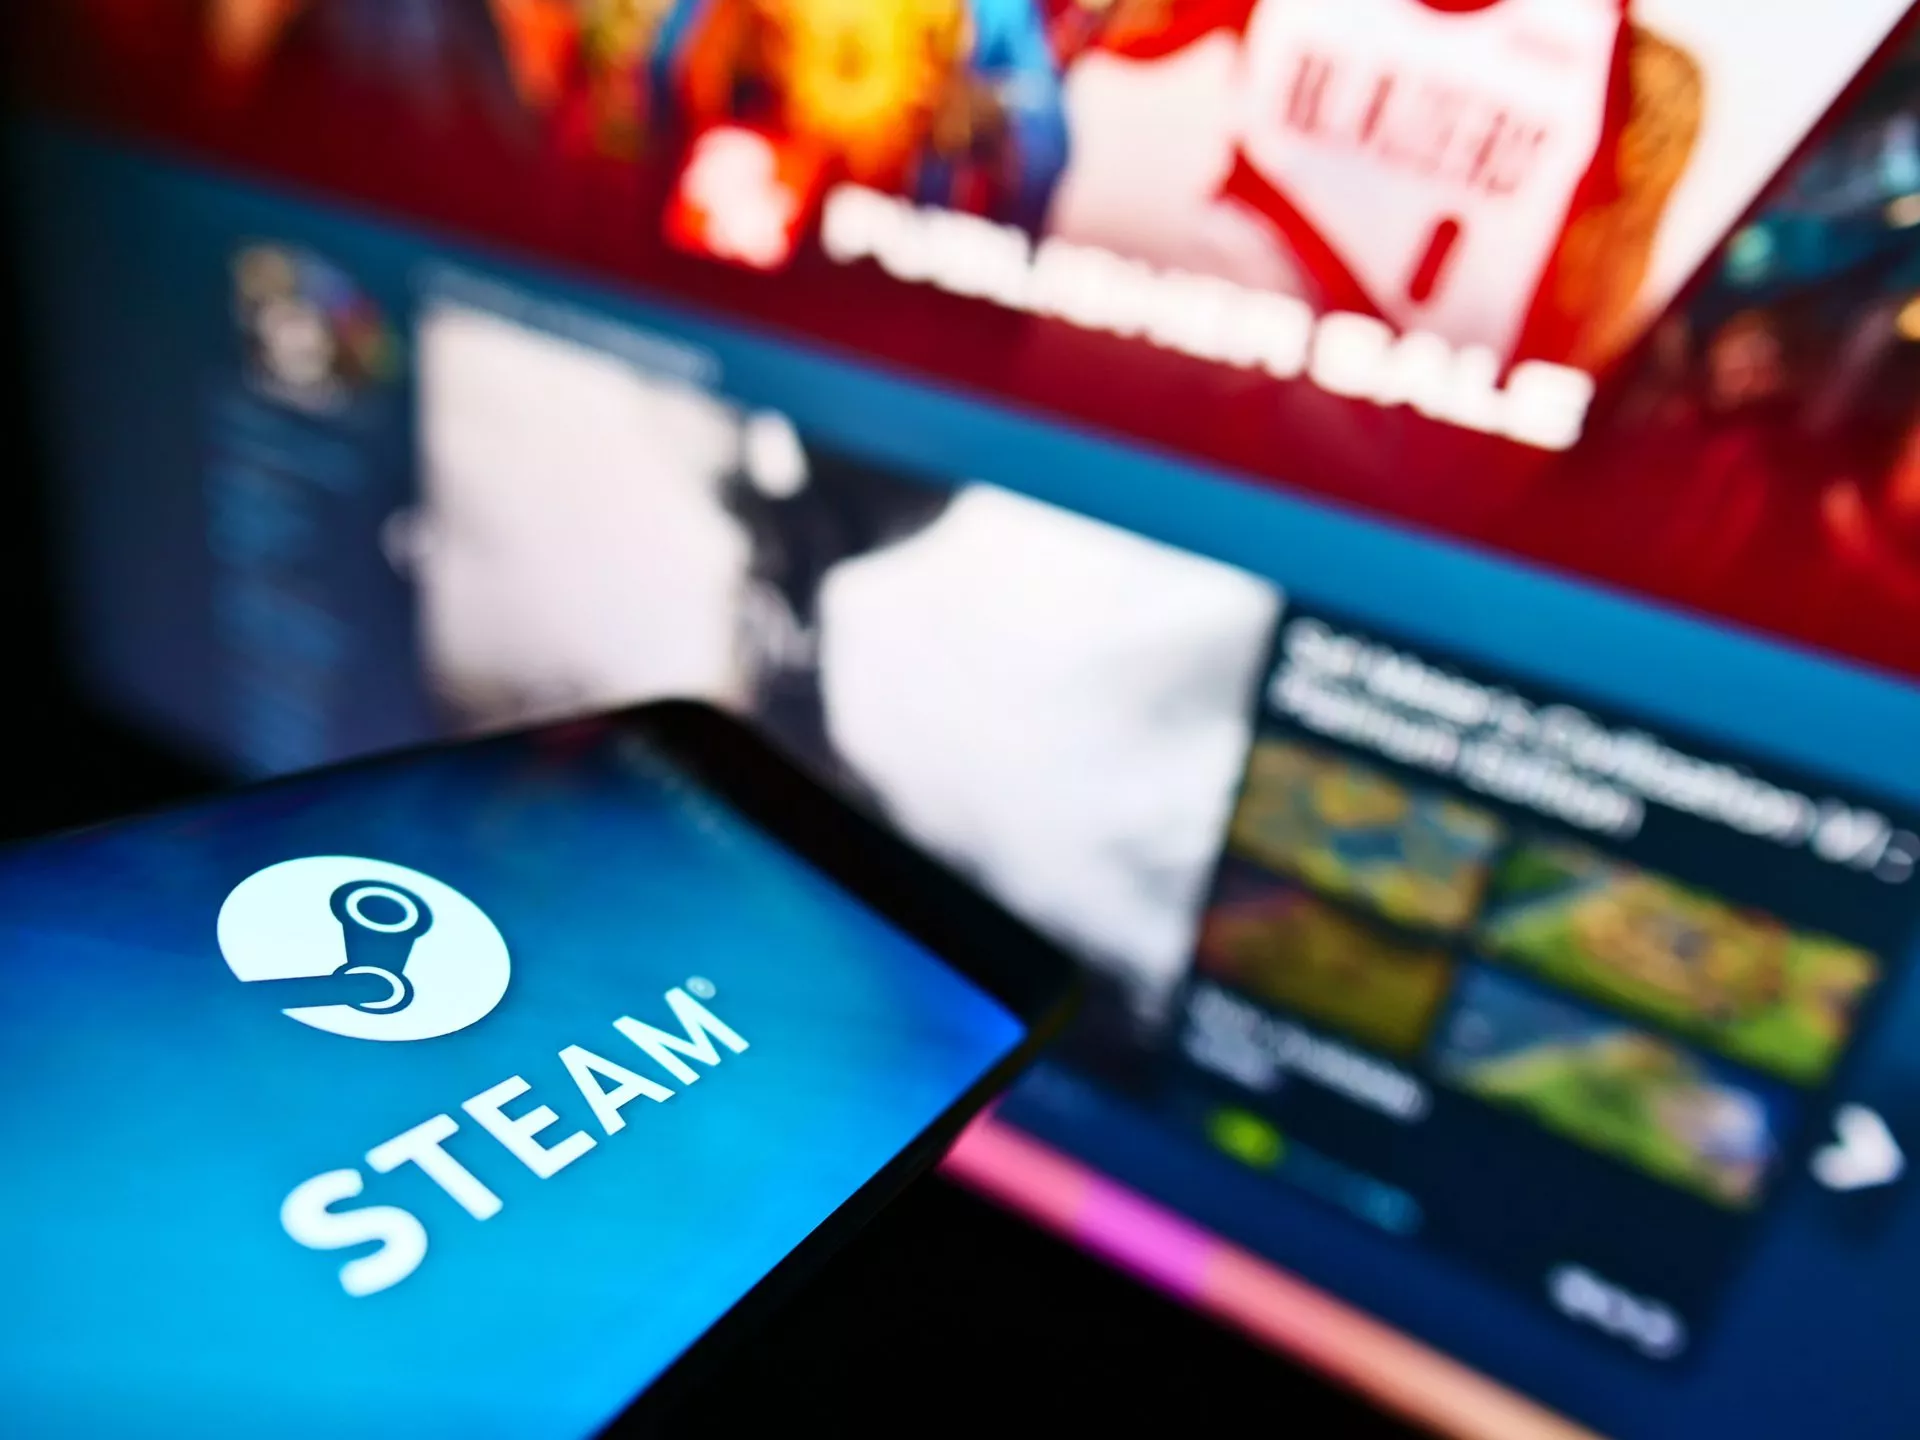 Valve haalt blockchain-games van Steam af